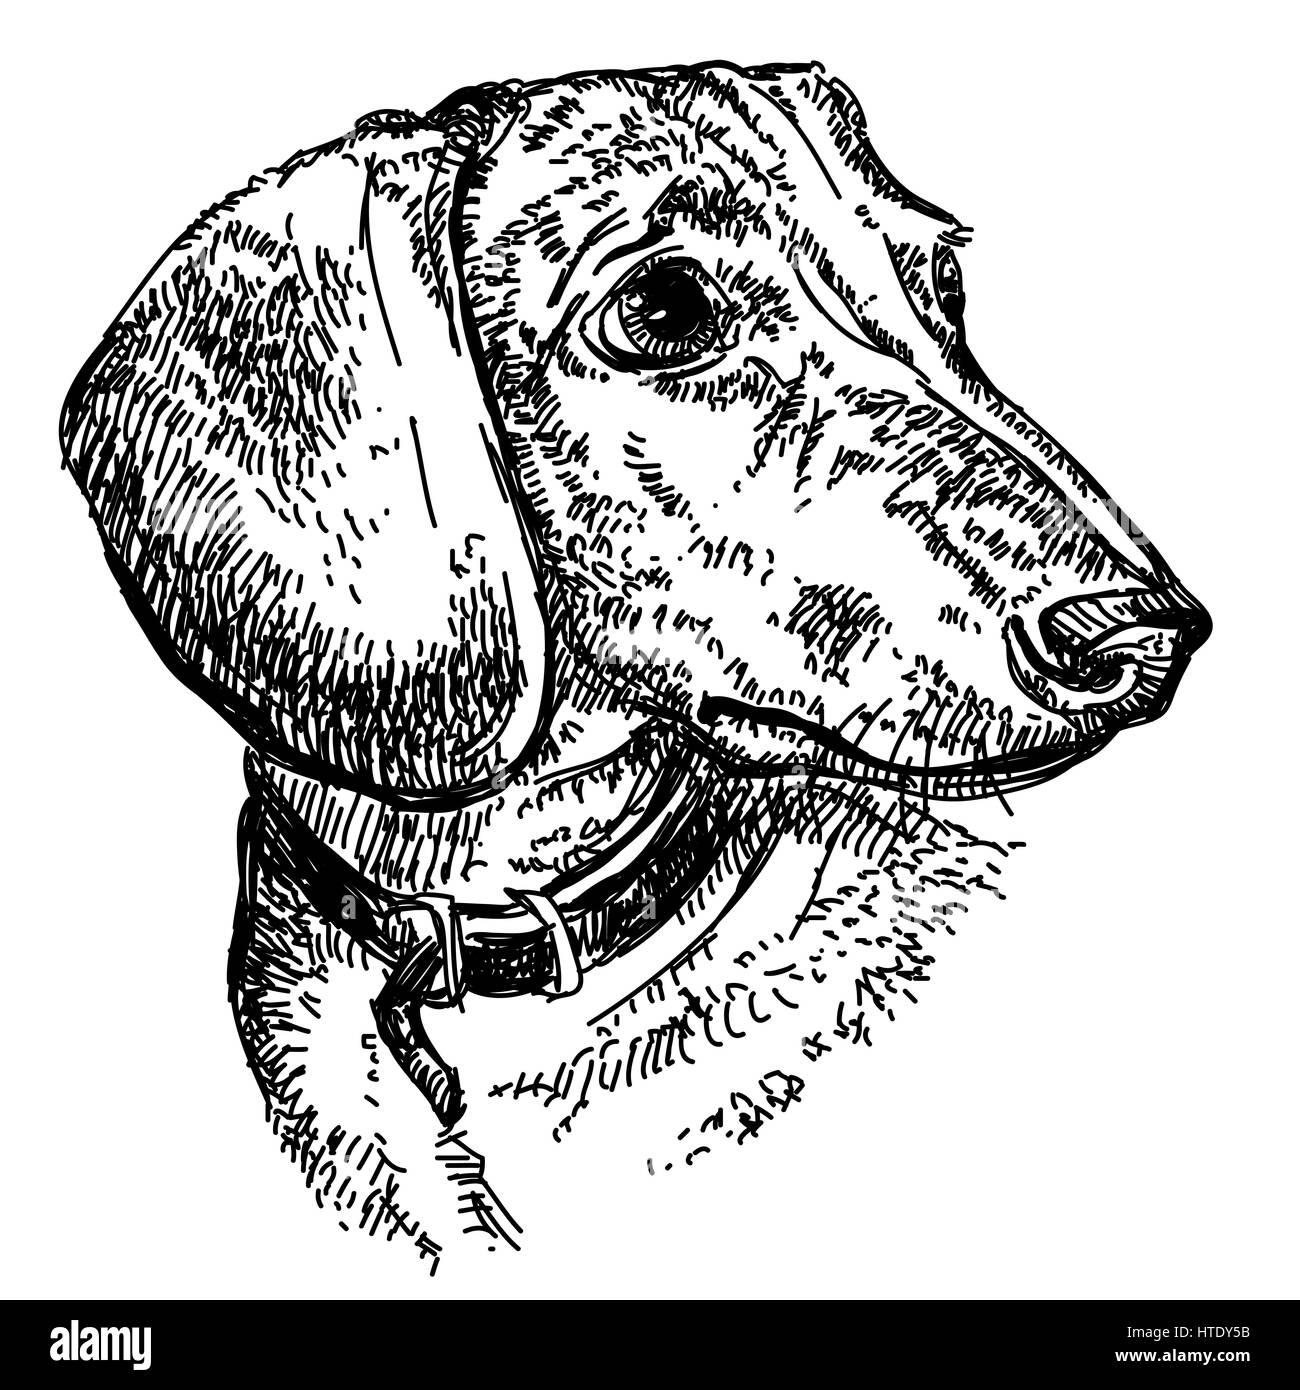 Porträt des jungen Hund Dackel in einem Kragen Vektor hand Zeichnung Abbildung in schwarz auf weißem Hintergrund Stock Vektor